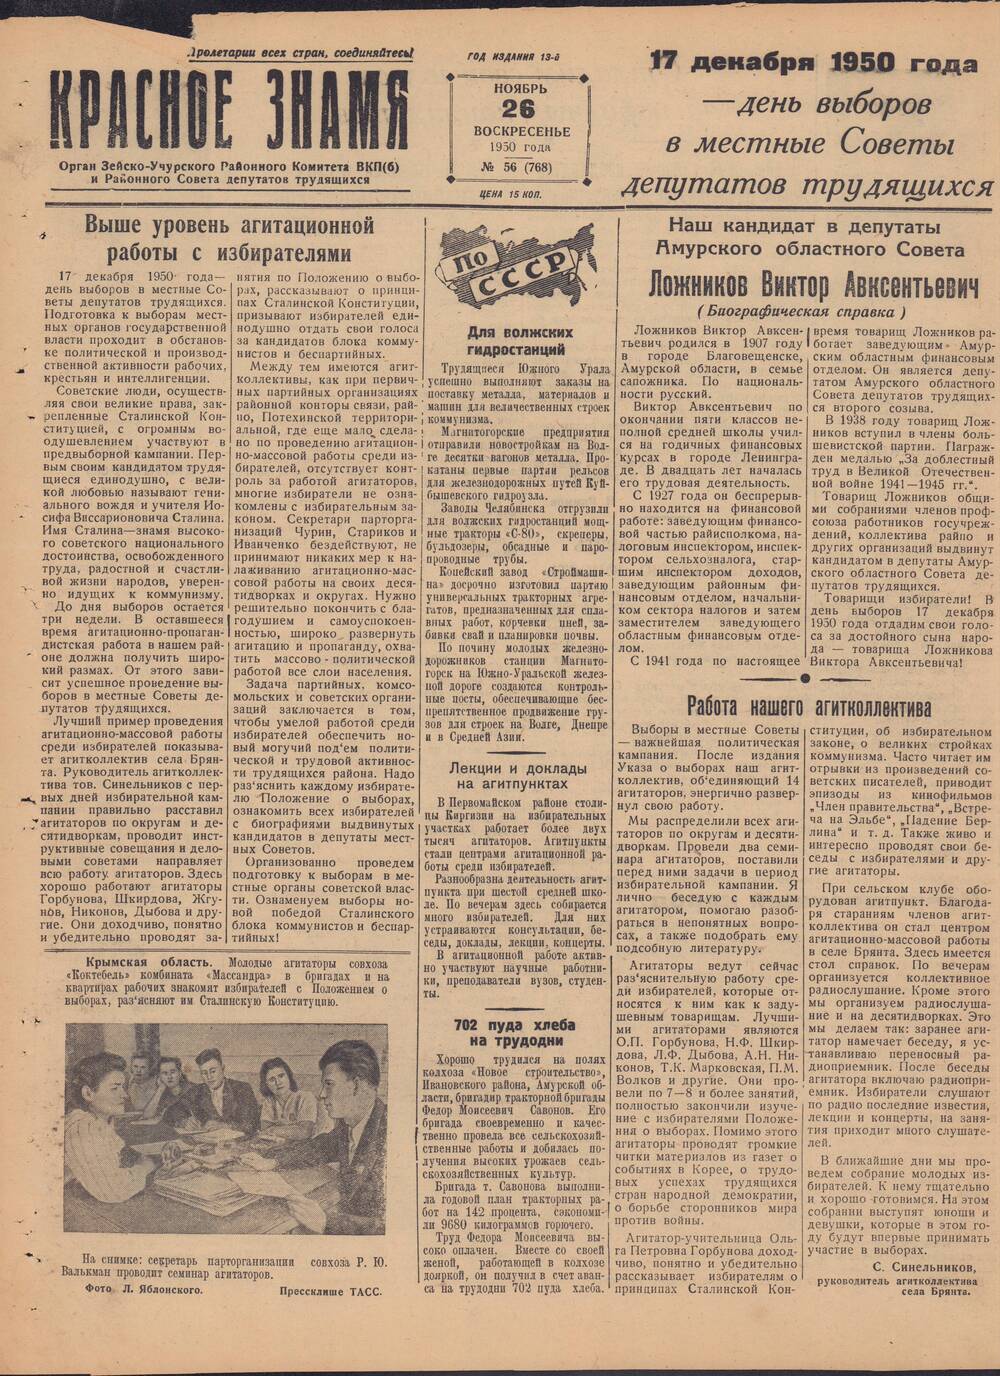 Газета Красное знамя №56 (768) от 26 ноября 1950 года.